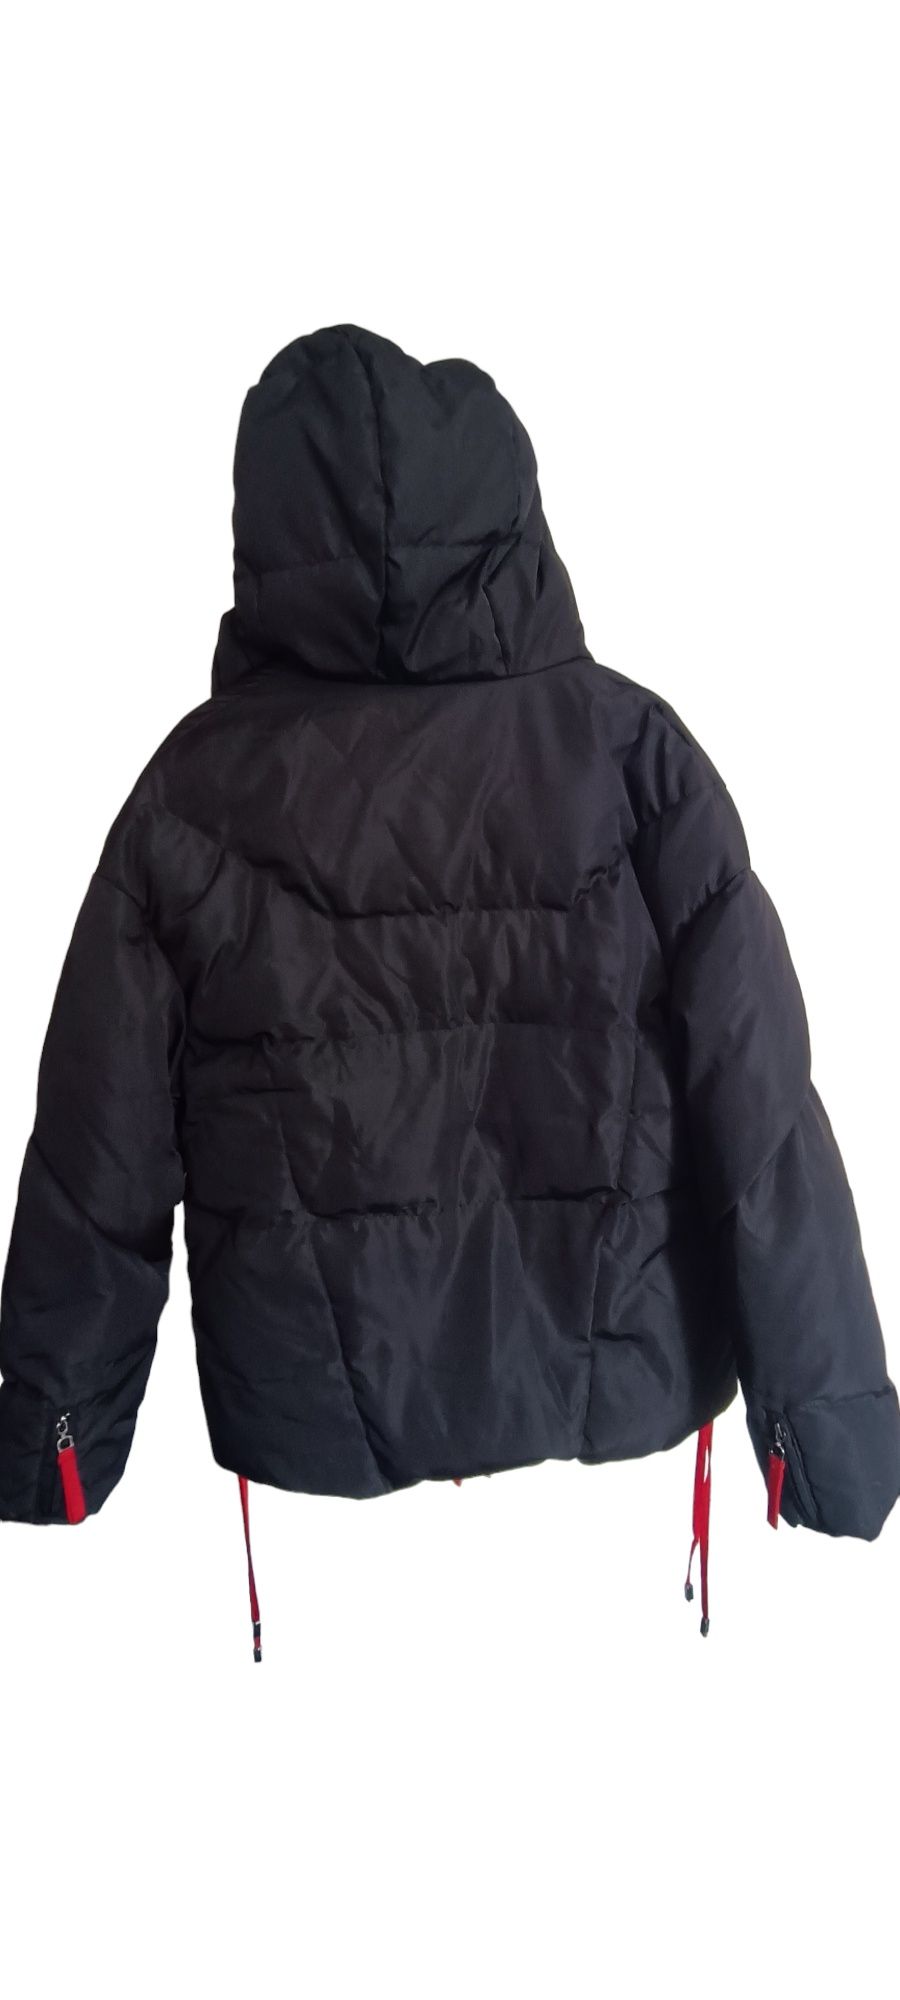 Продам куртку жіночу осінь-зима фірми Braska р. 48